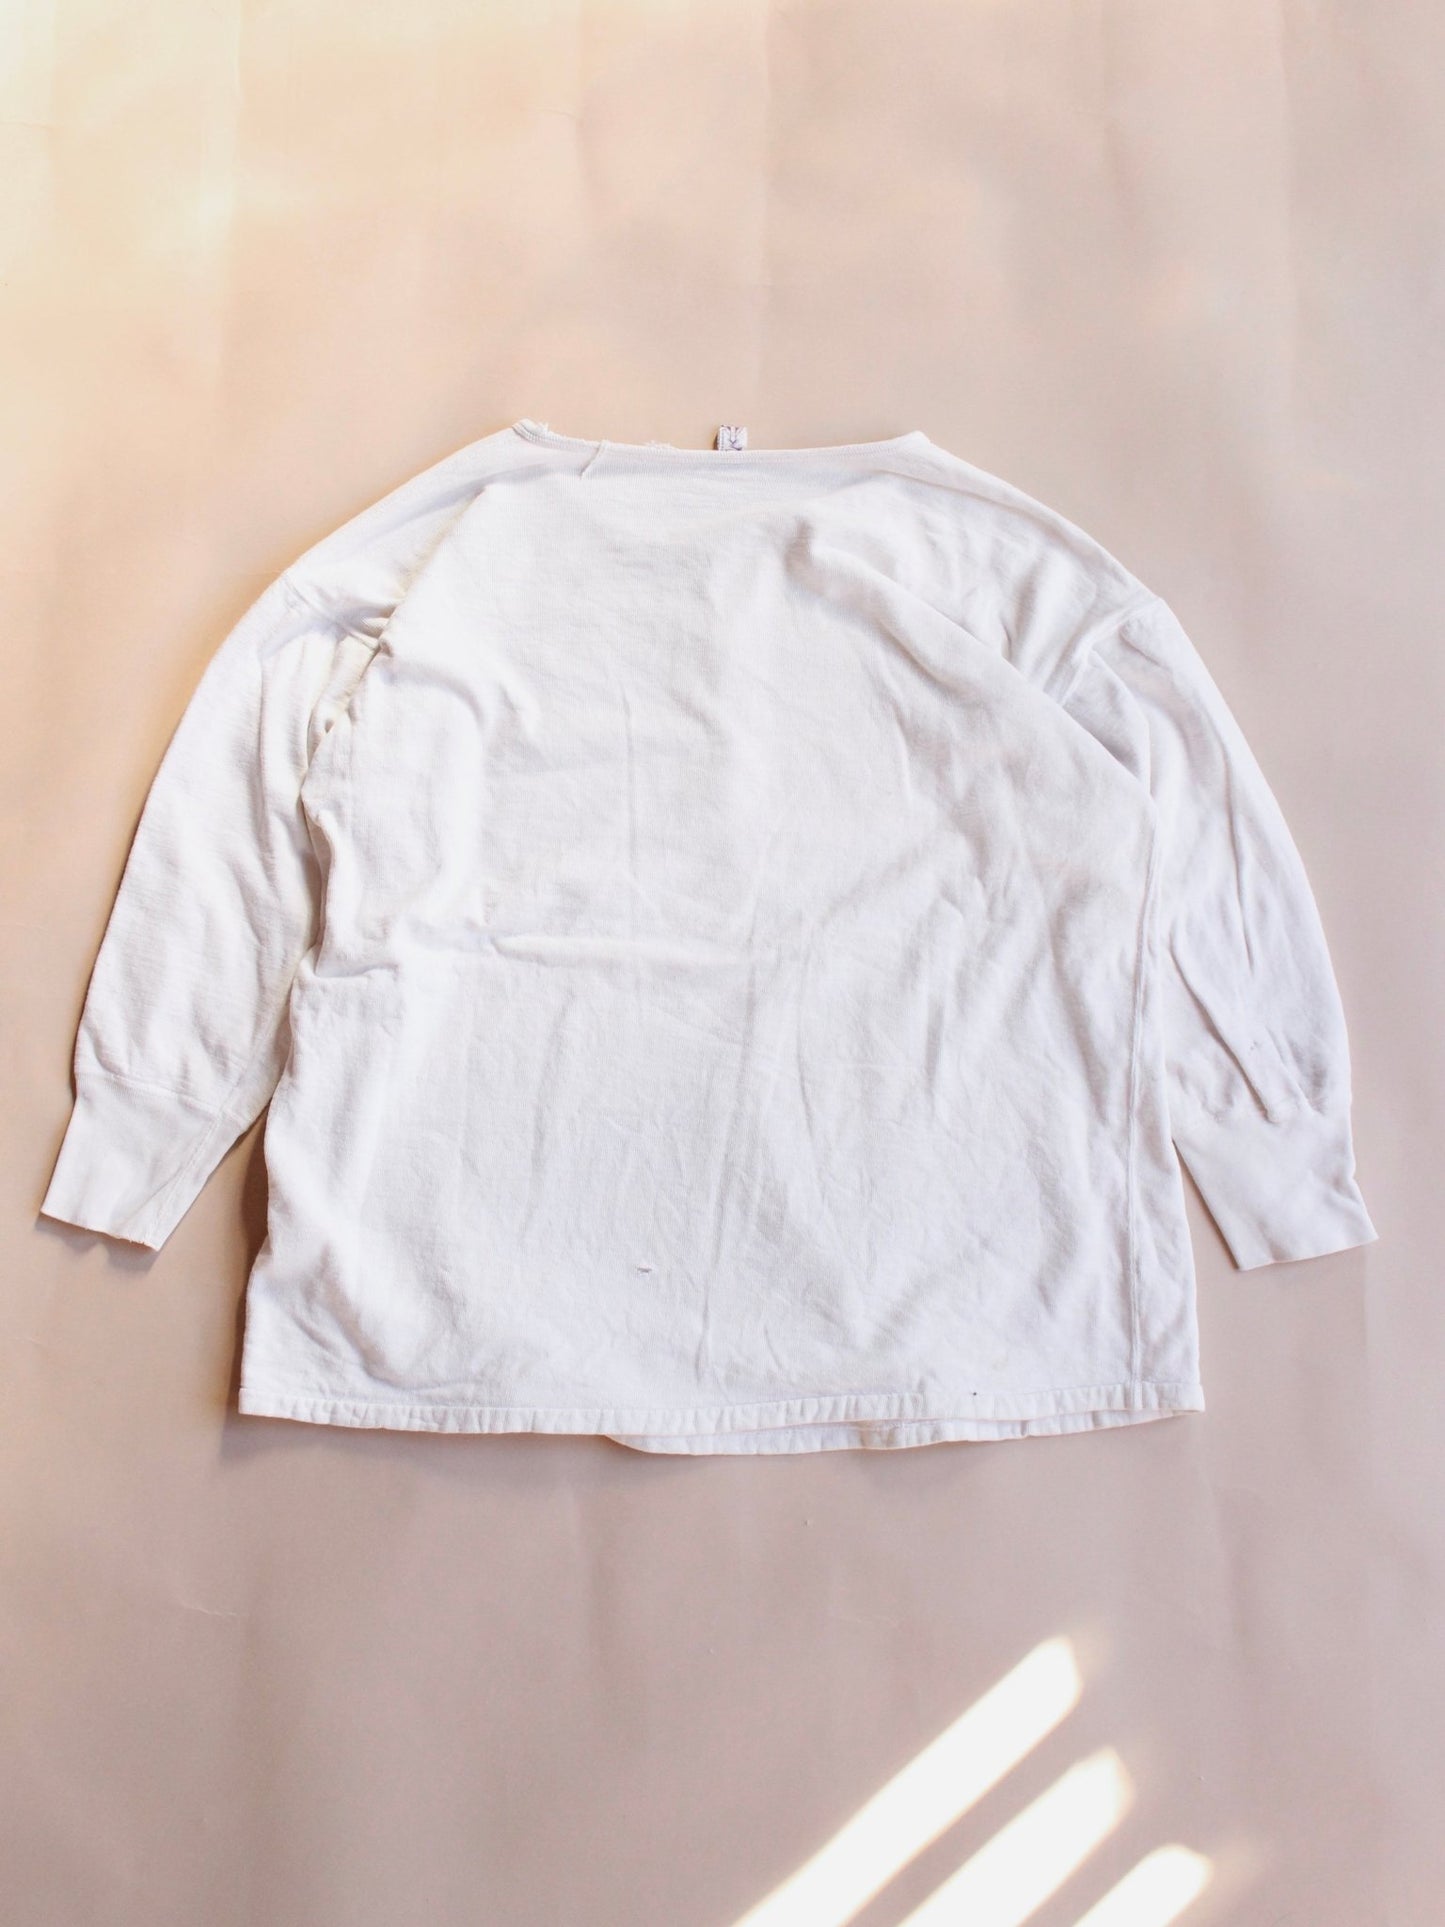 1960s Cotton Under Shirt